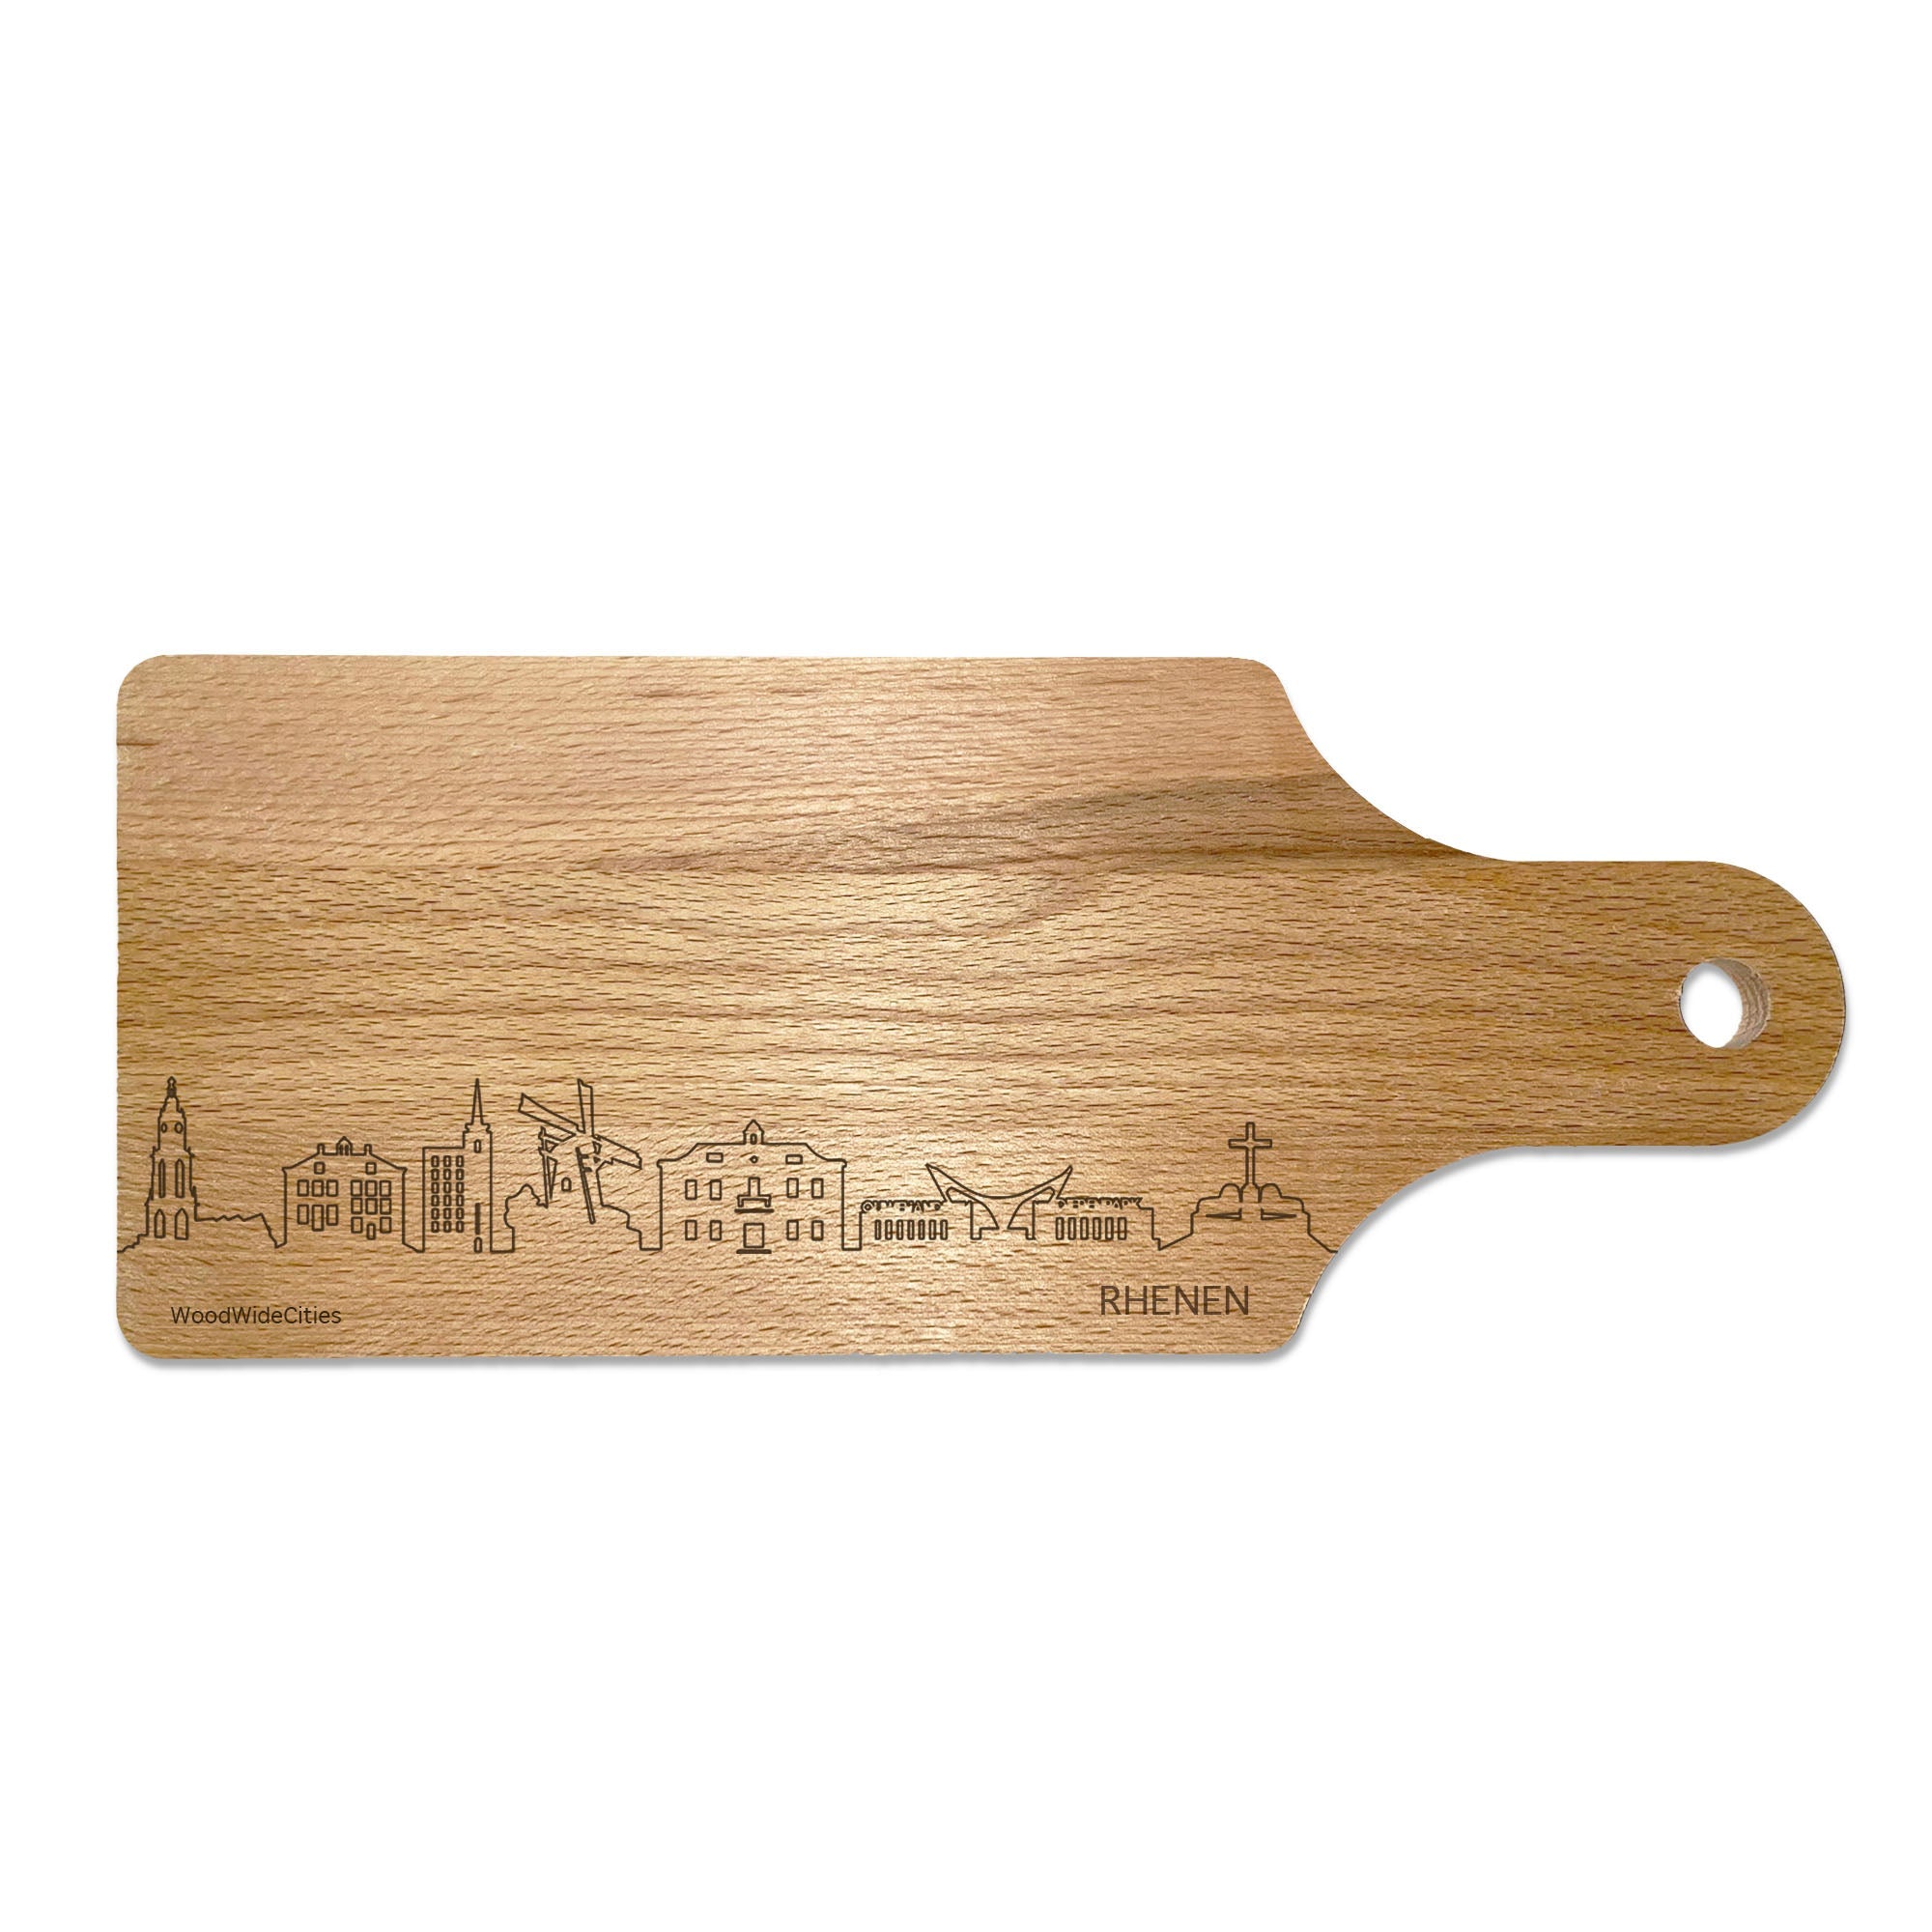 Skyline Borrelplank Rhenen houten cadeau decoratie relatiegeschenk van WoodWideCities